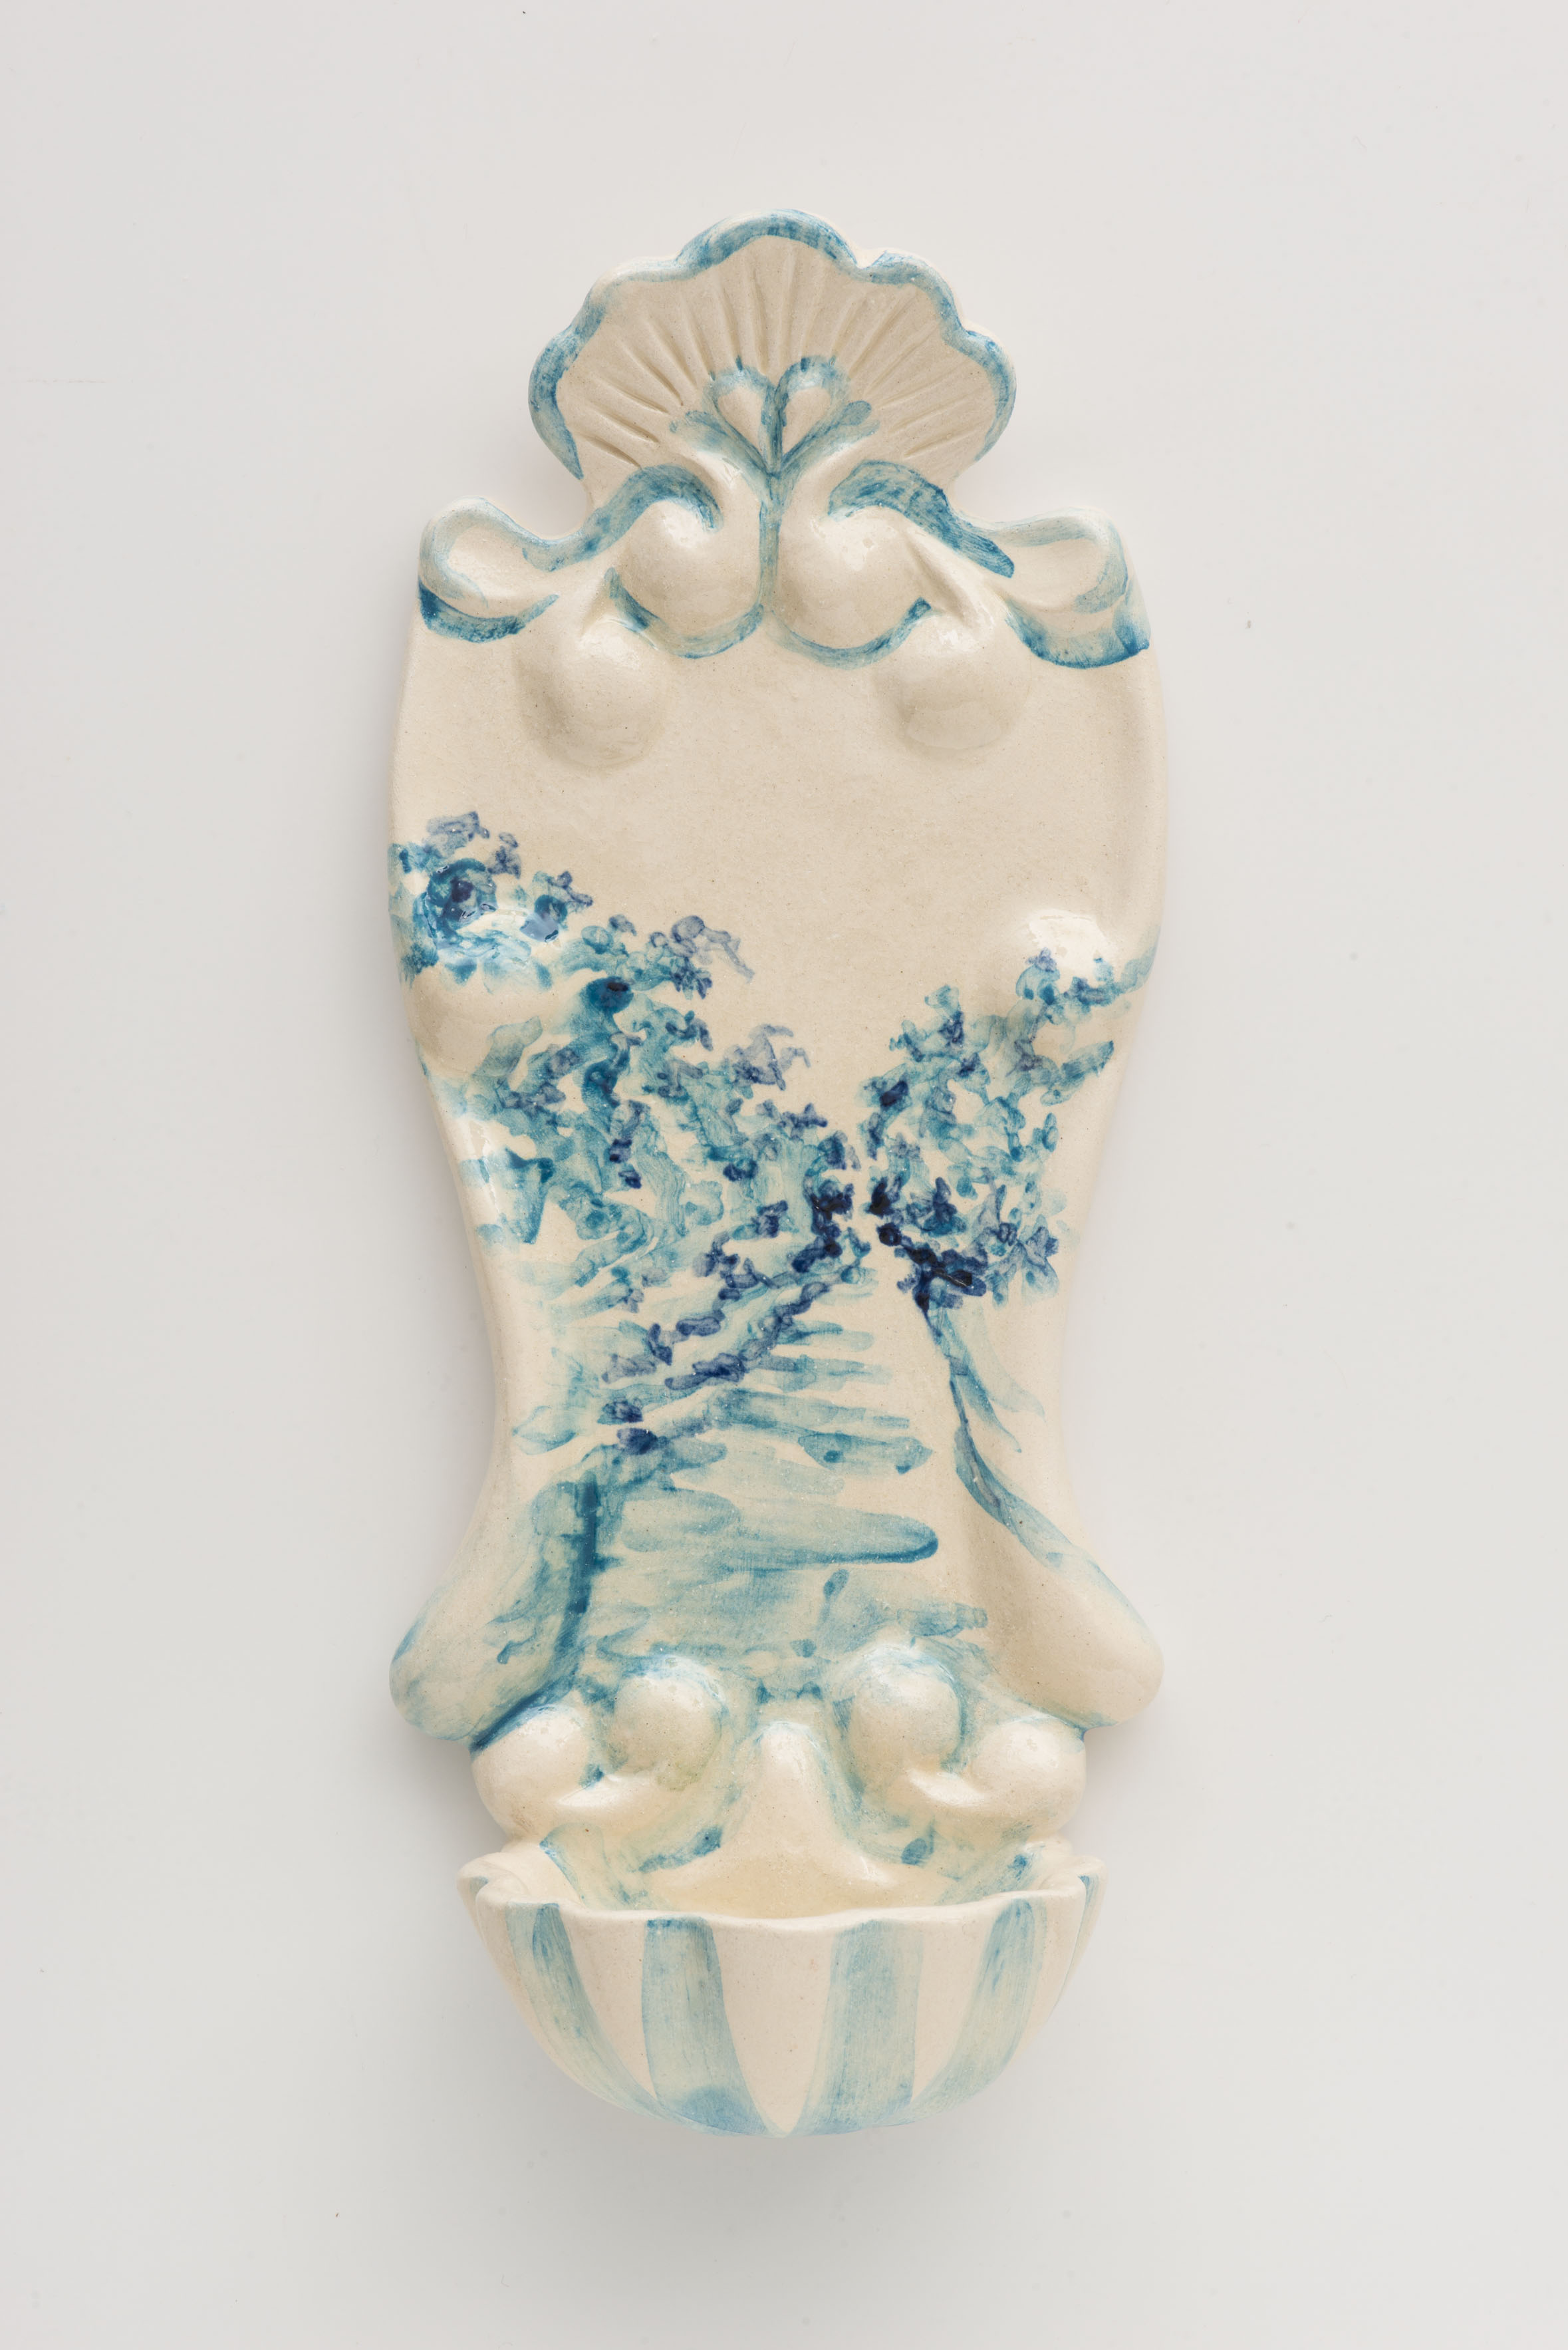 "Pia de Agua Bente I", painted ceramic pia de agua bent,e Portugal 2014